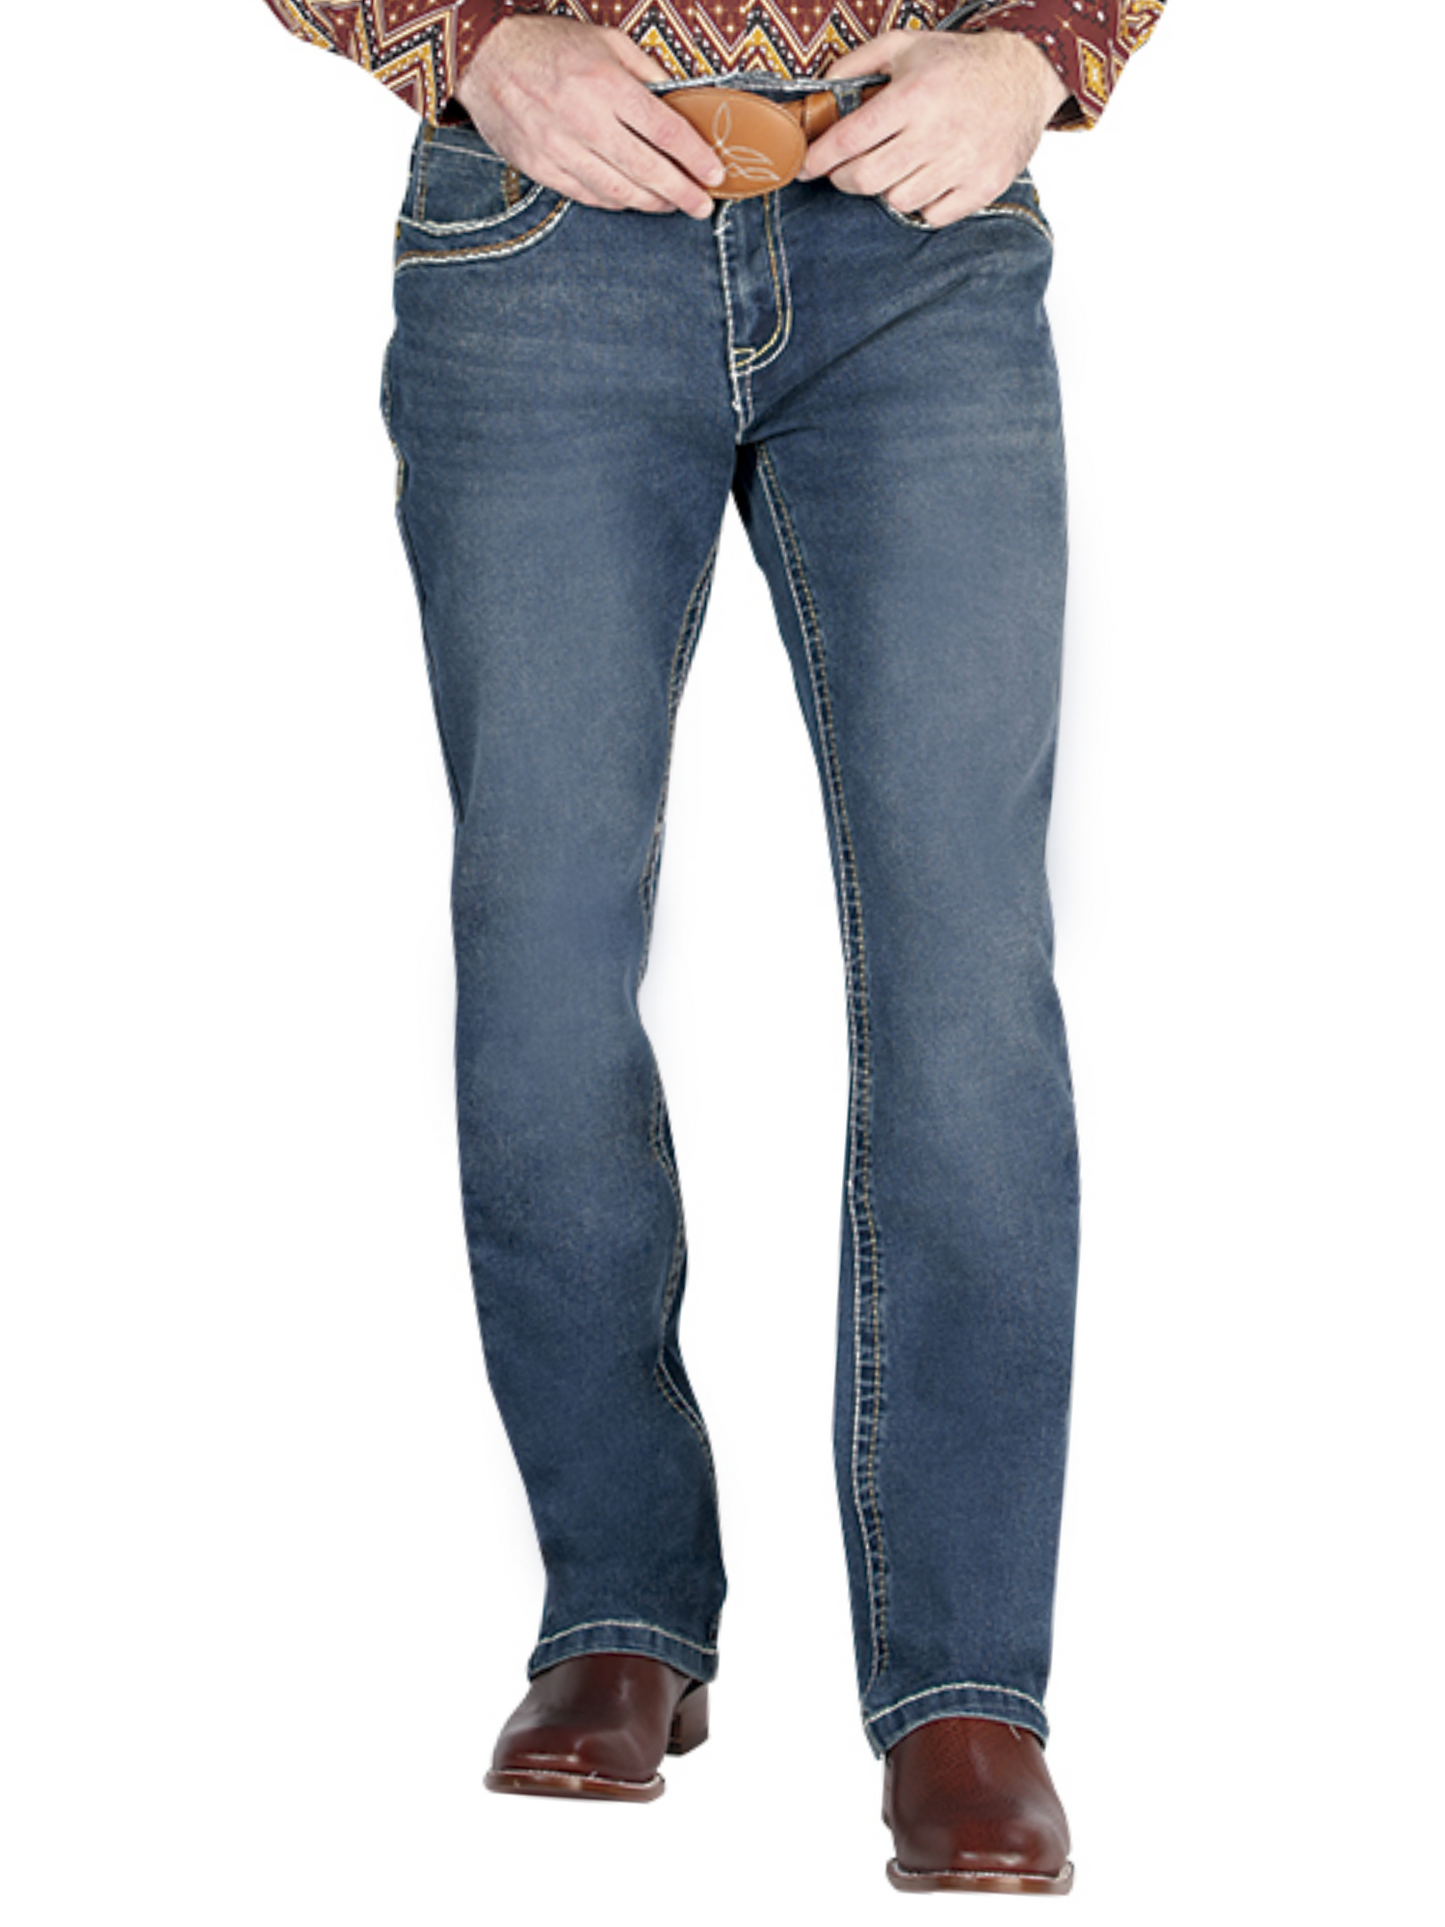 Dark Blue Boot Cut Denim Jeans for Men 'Centenario' - ID: 44841 Denim Jeans Centenario